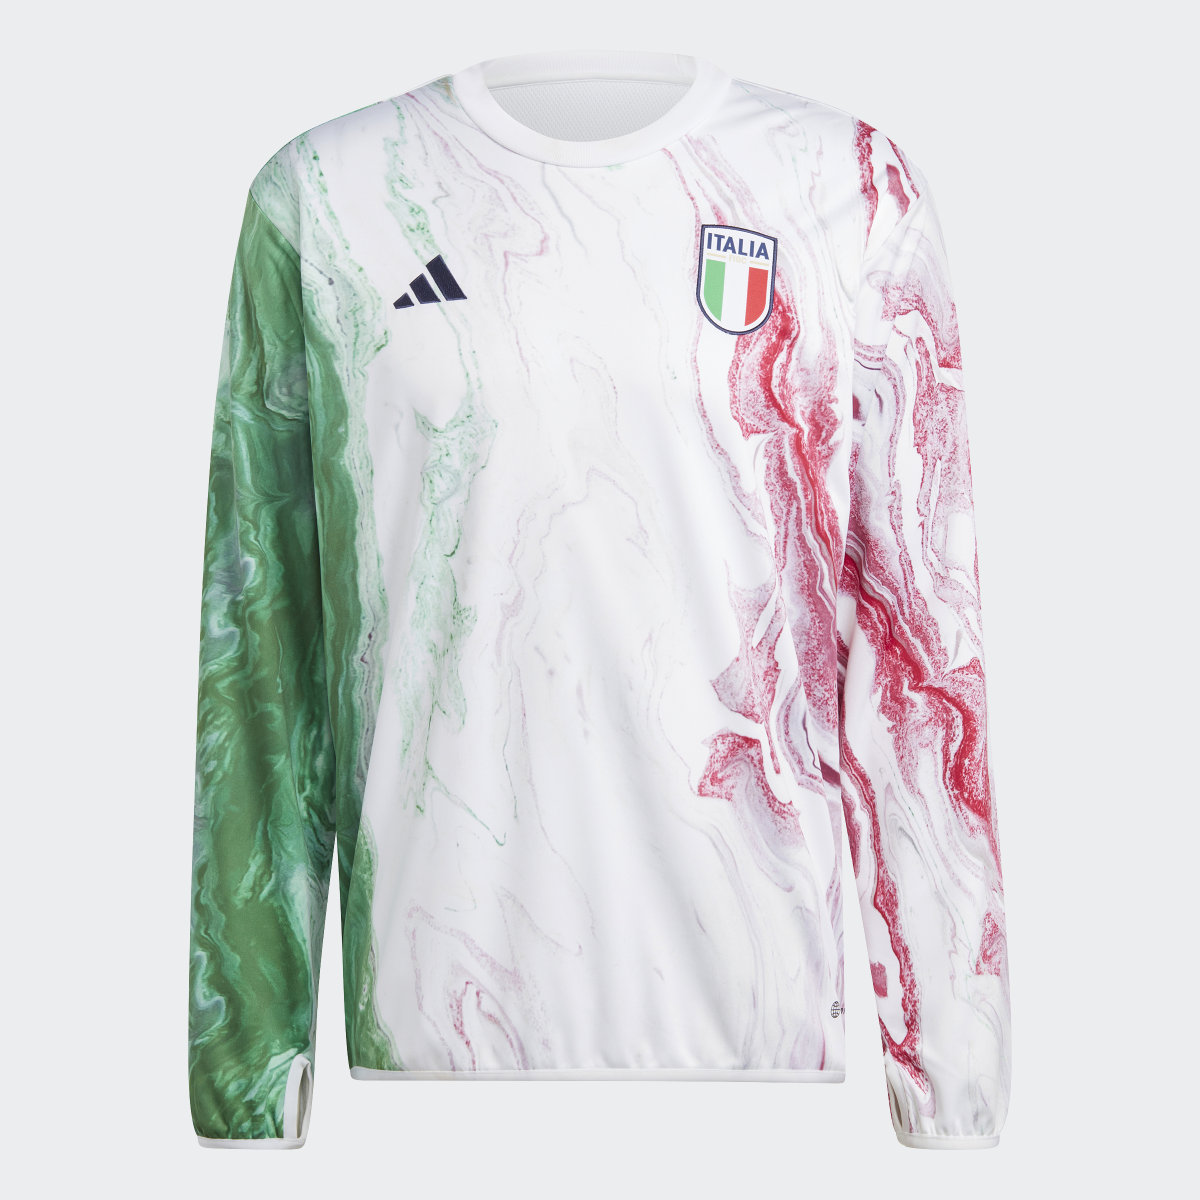 Adidas Camisola de Aquecimento da Itália. 5